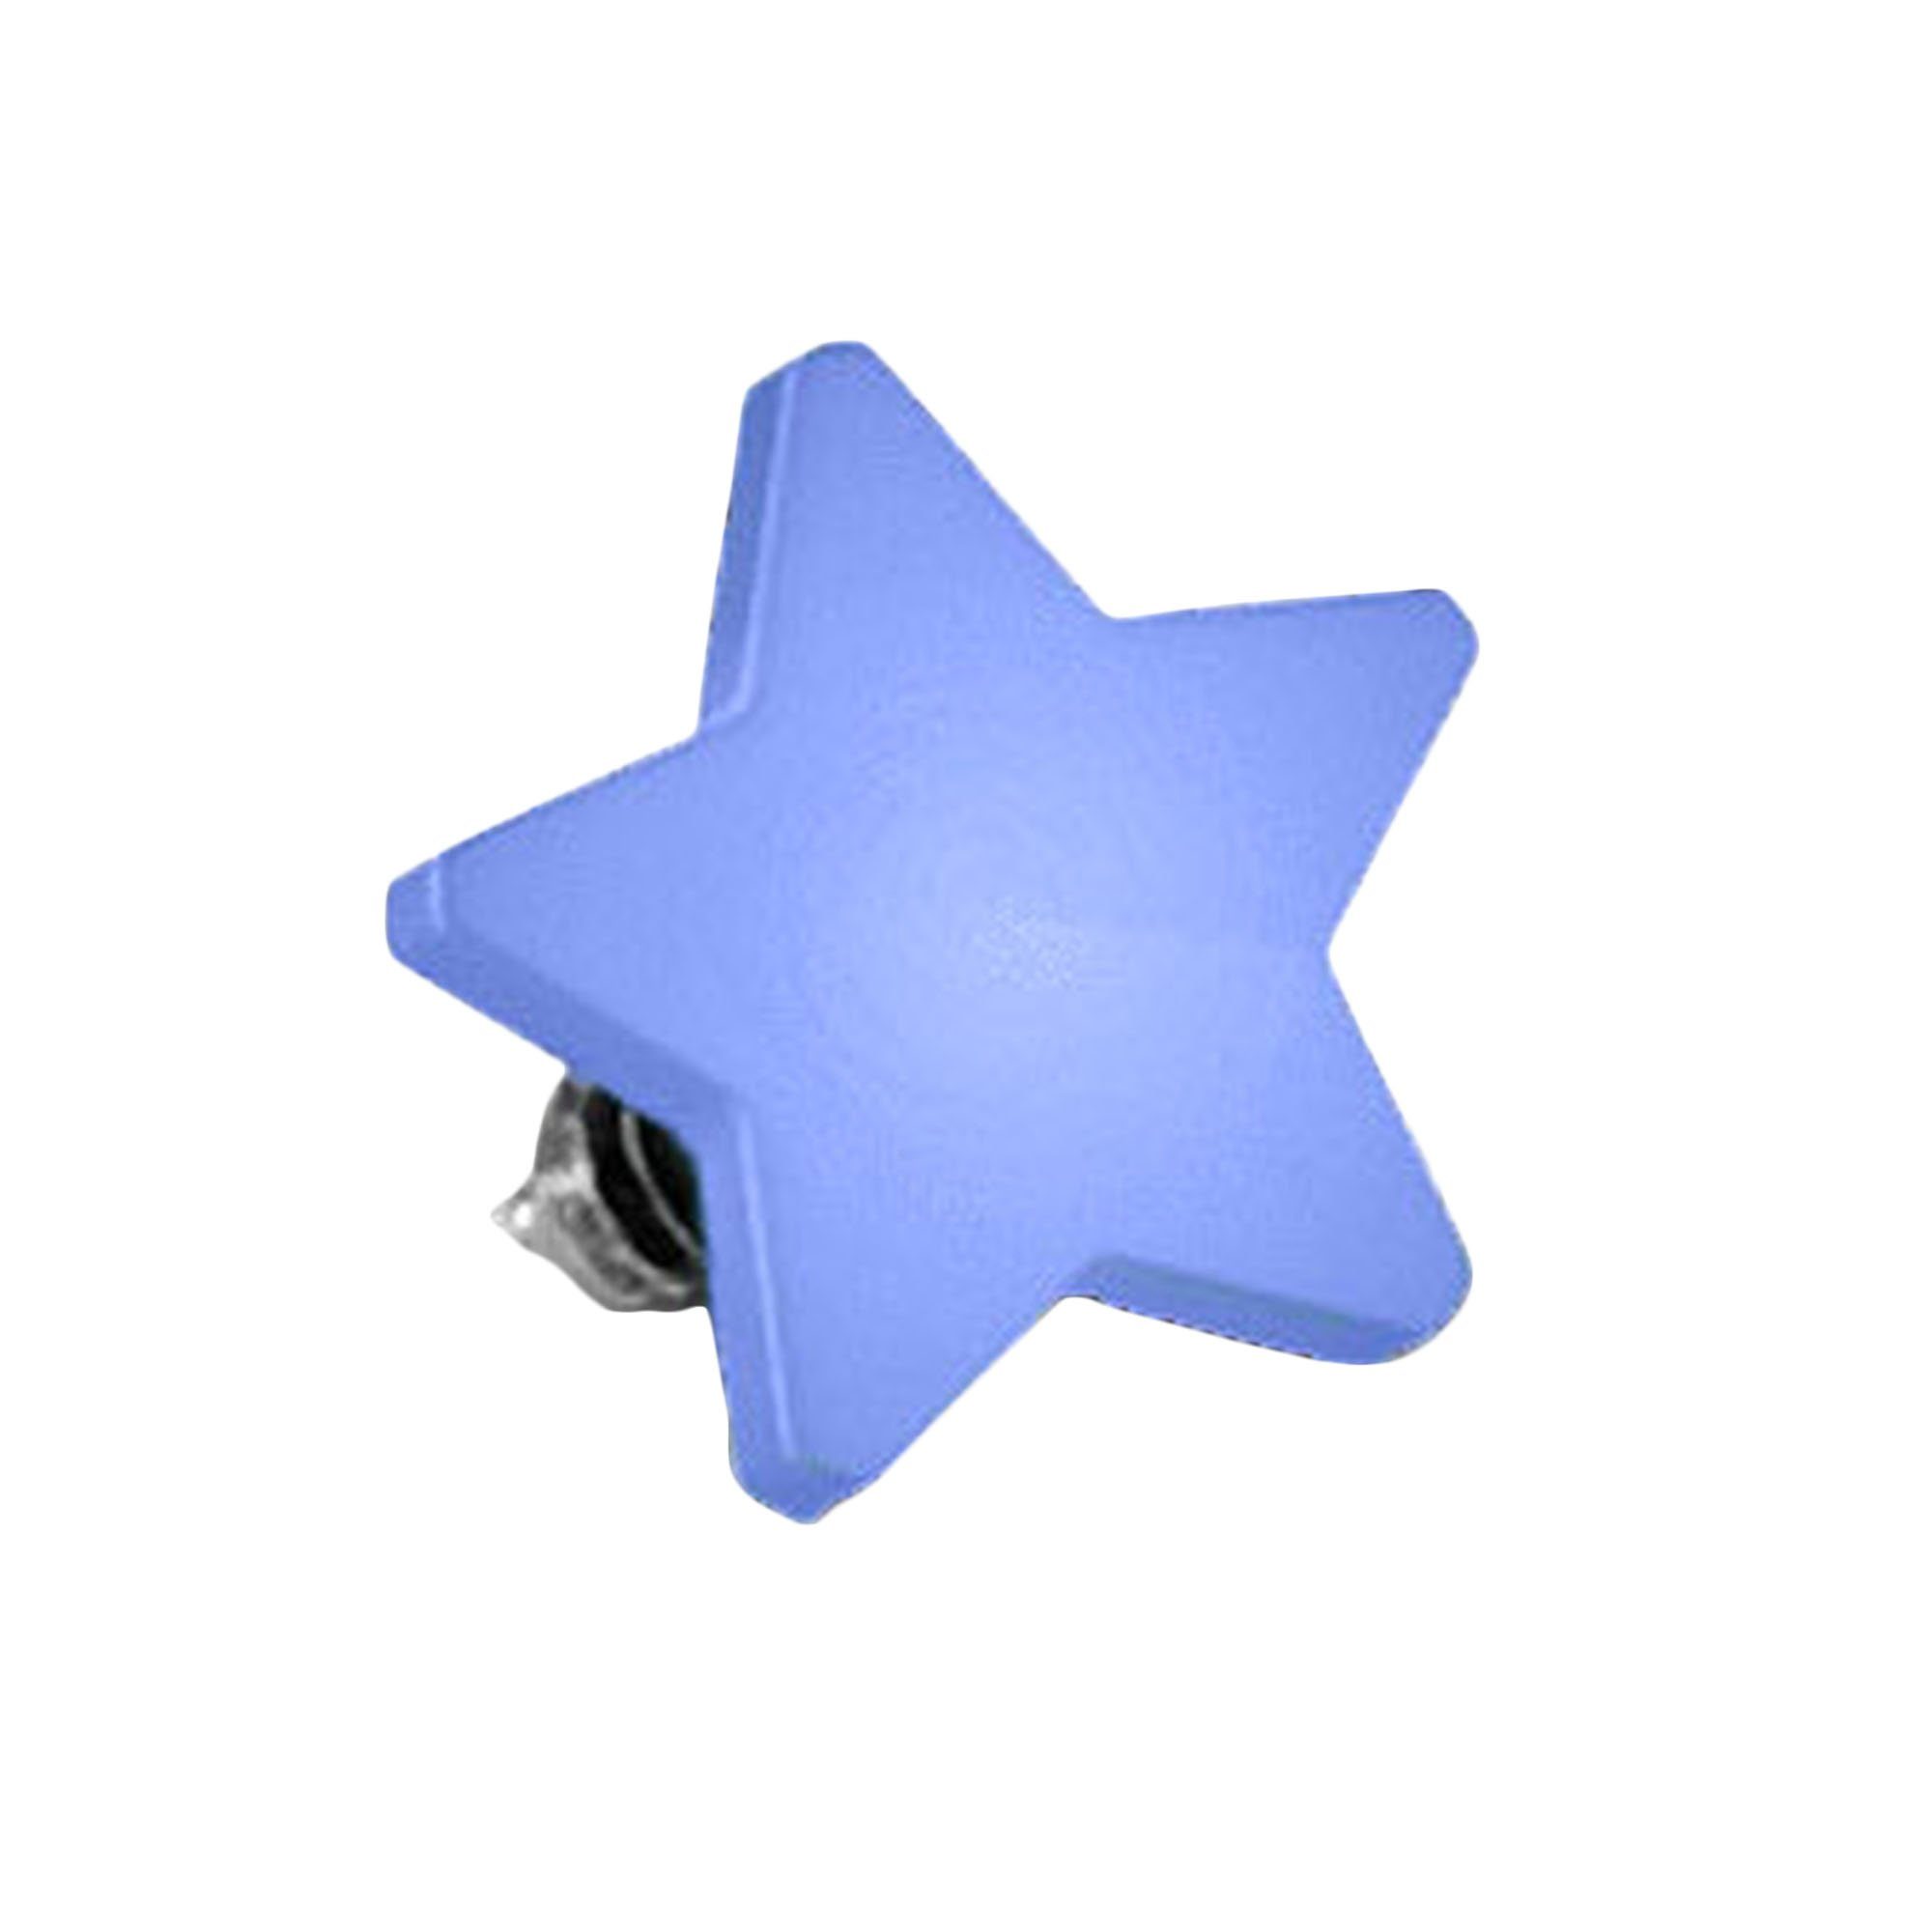 Anker Gewinde Farbig Blau Stecker Micro Flach Skin Stern, Dermal Diver Piercing Piercing-Implantat Aufsatz Platte Dermal Anchor Piercing Micro Taffstyle